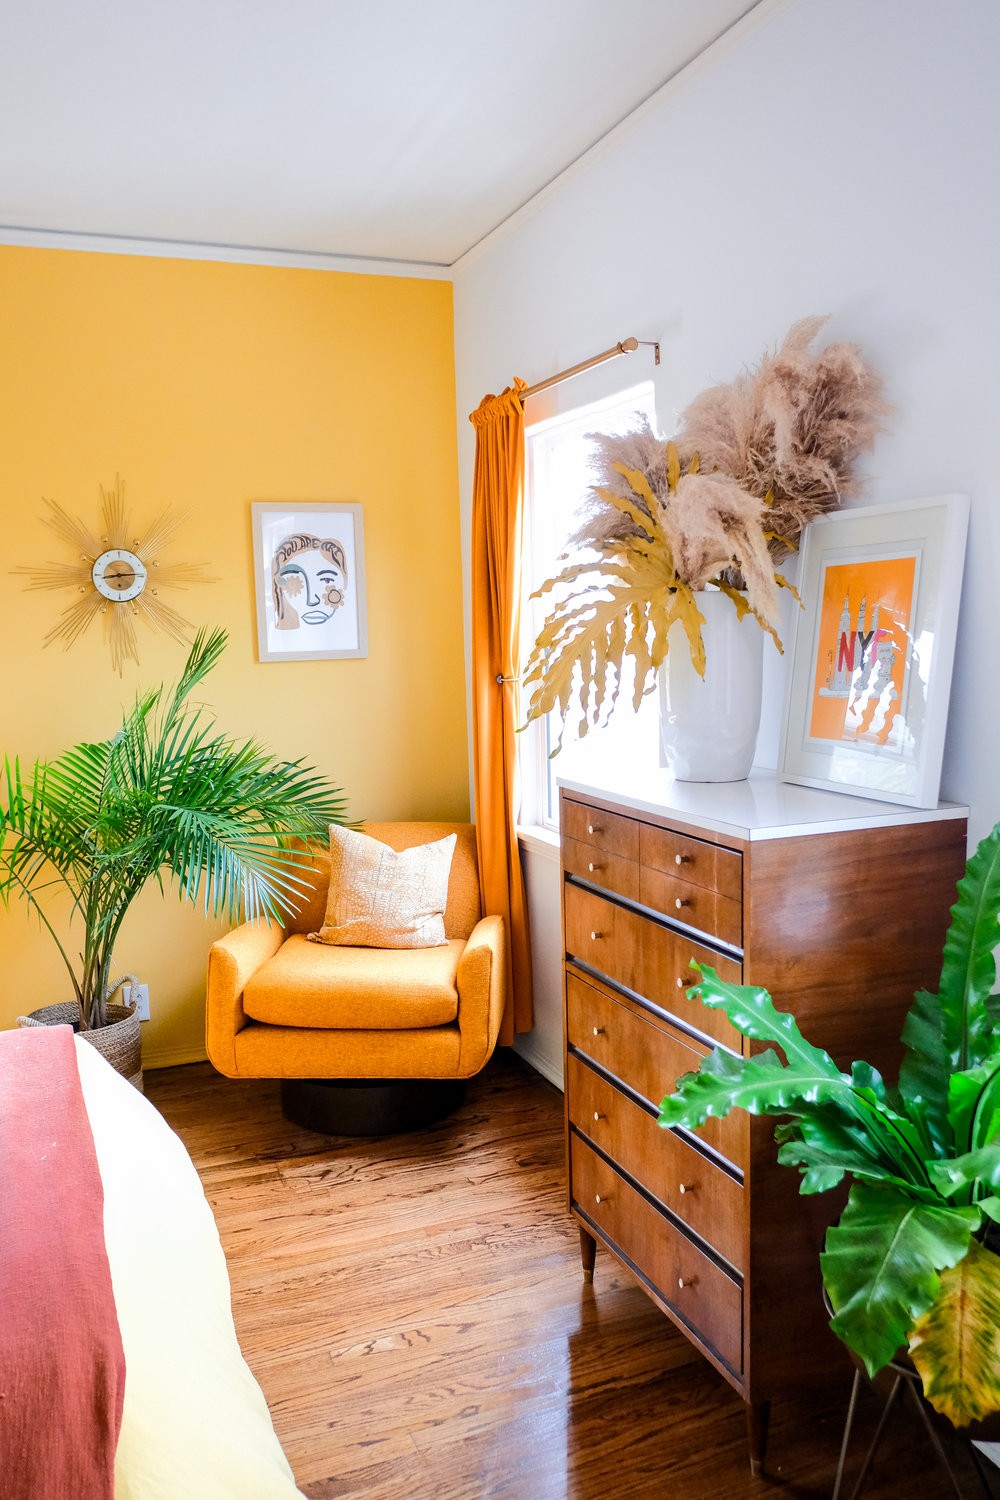 Décor do dia: quarto amarelo com pintura diferente na cabeceira (Foto: Reprodução/Instagram)